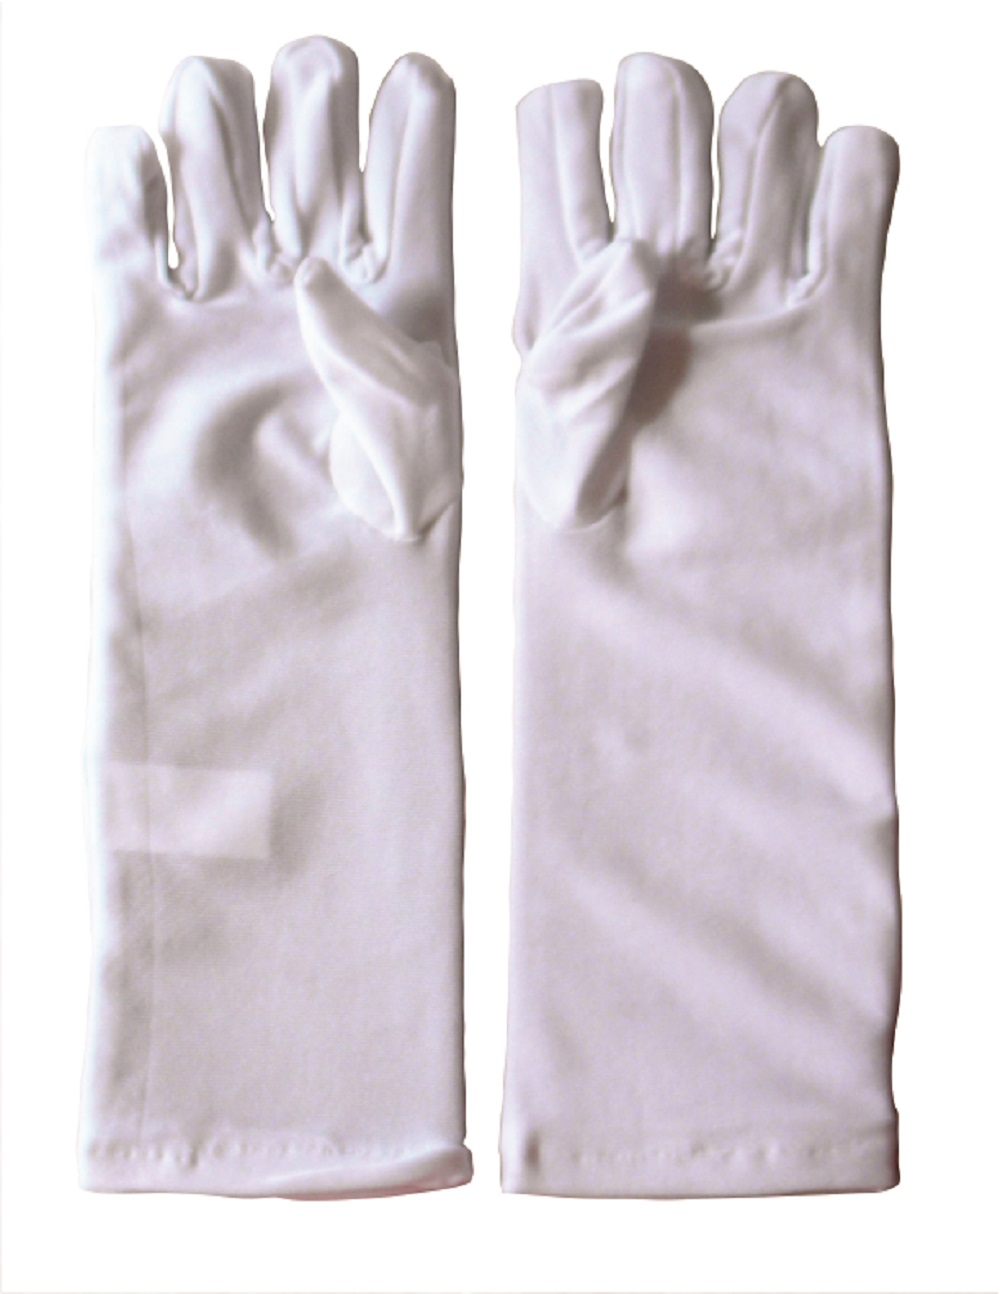 Girl's Long White Dress Up Gloves